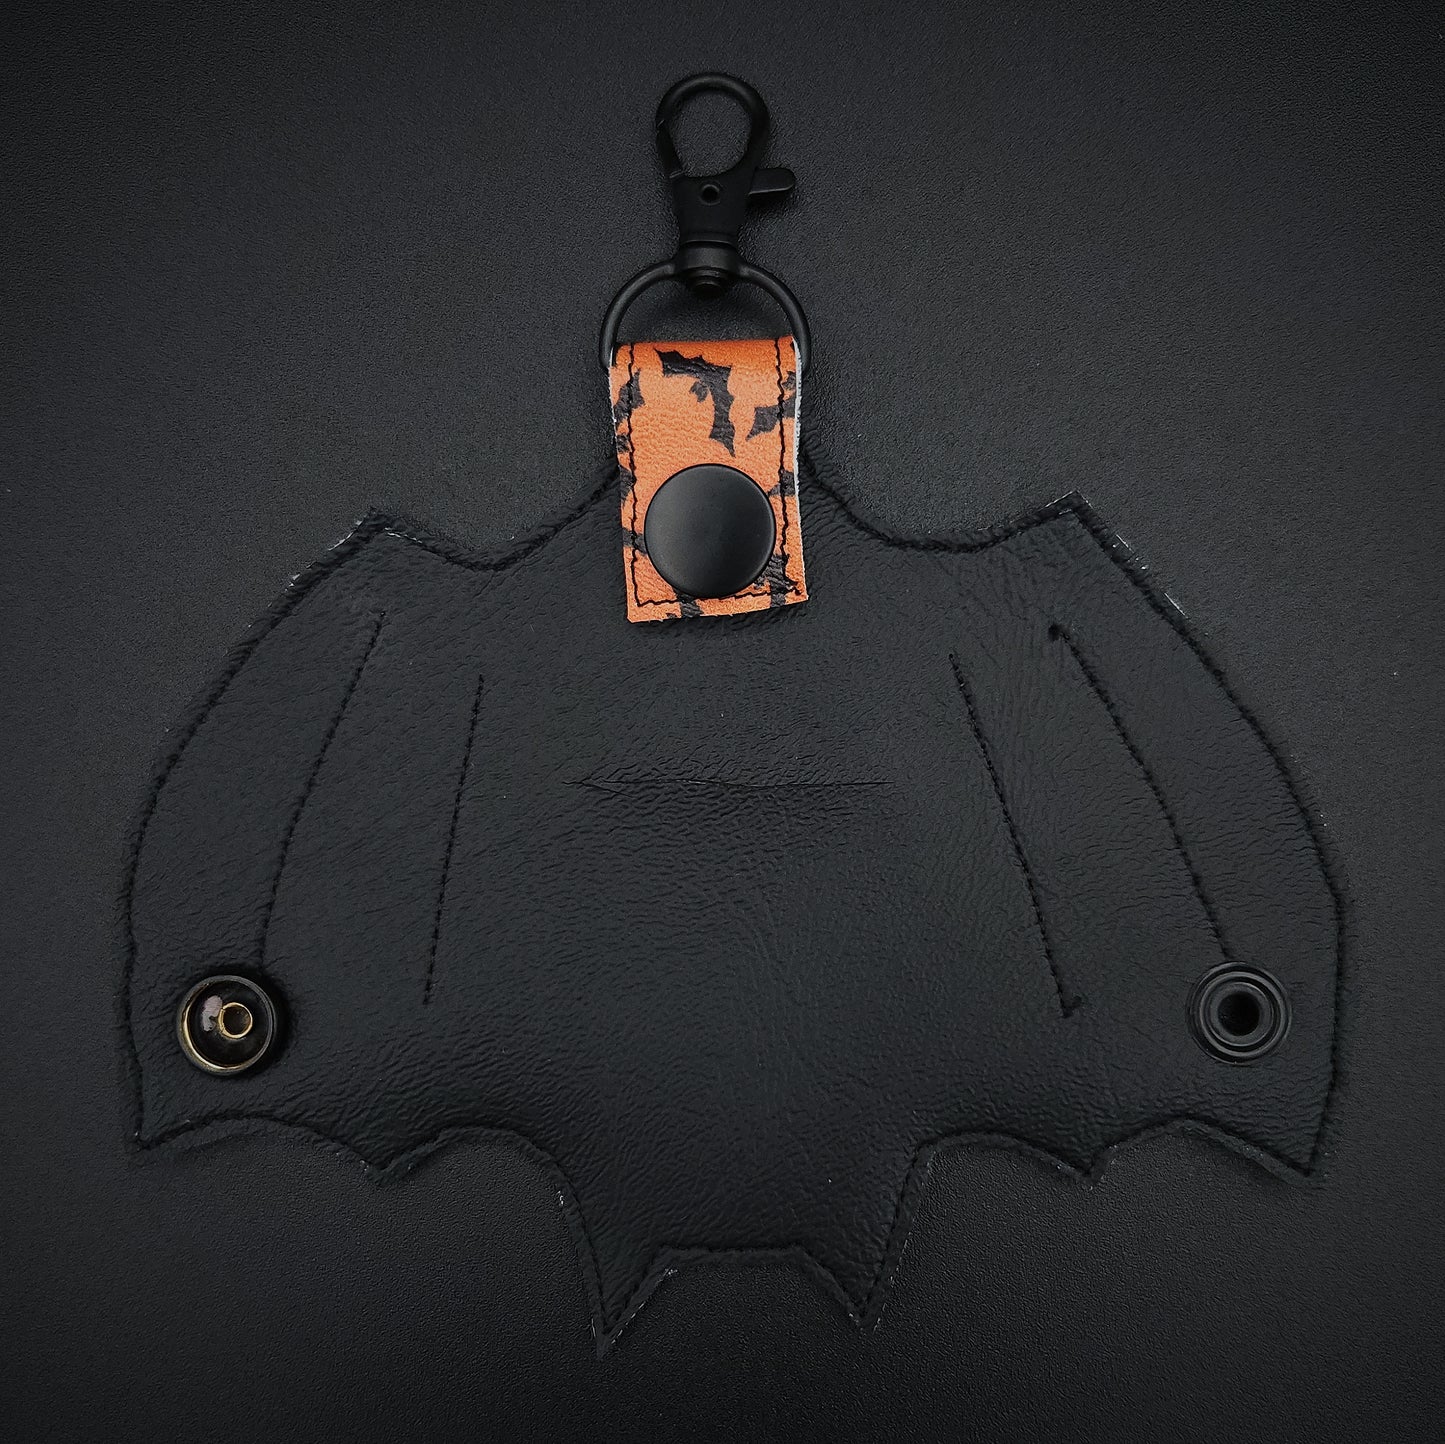 Bat Perfume Holder Keychain - Orange Bat